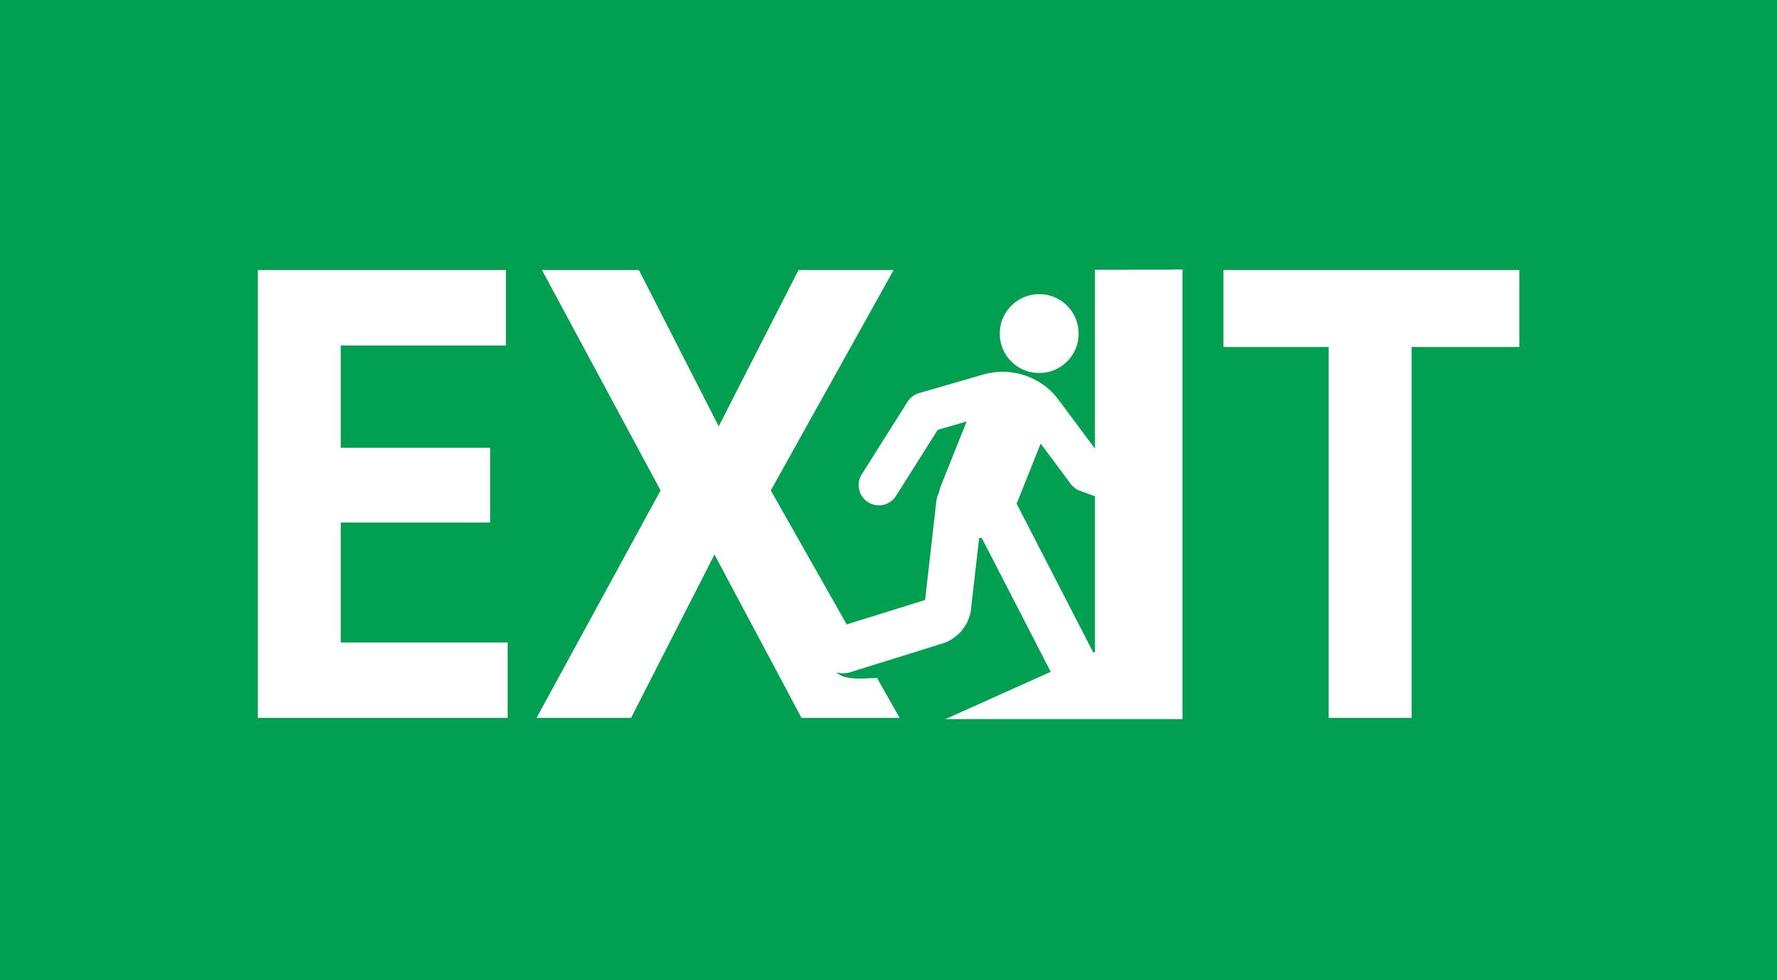 notausgang türschild vektor illustration.service symbol der evakuierung. Richtung zum Eingang auf grünem Hintergrund